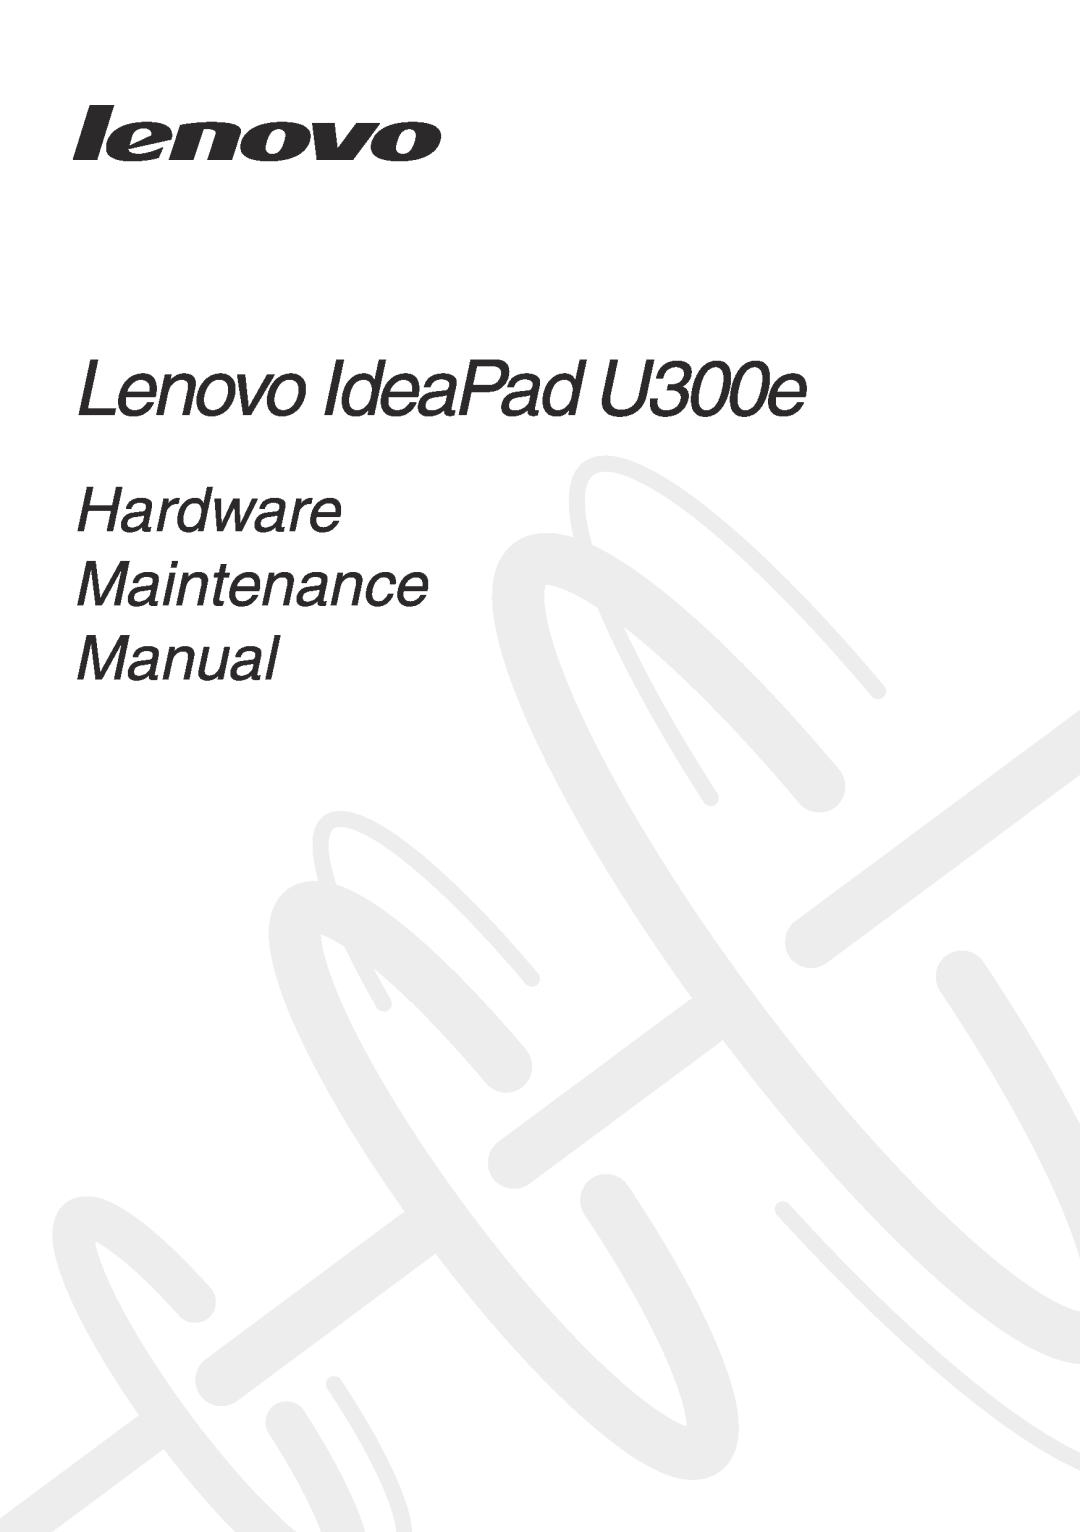 Lenovo U300E manual Lenovo IdeaPad U300e, Hardware Maintenance Manual 